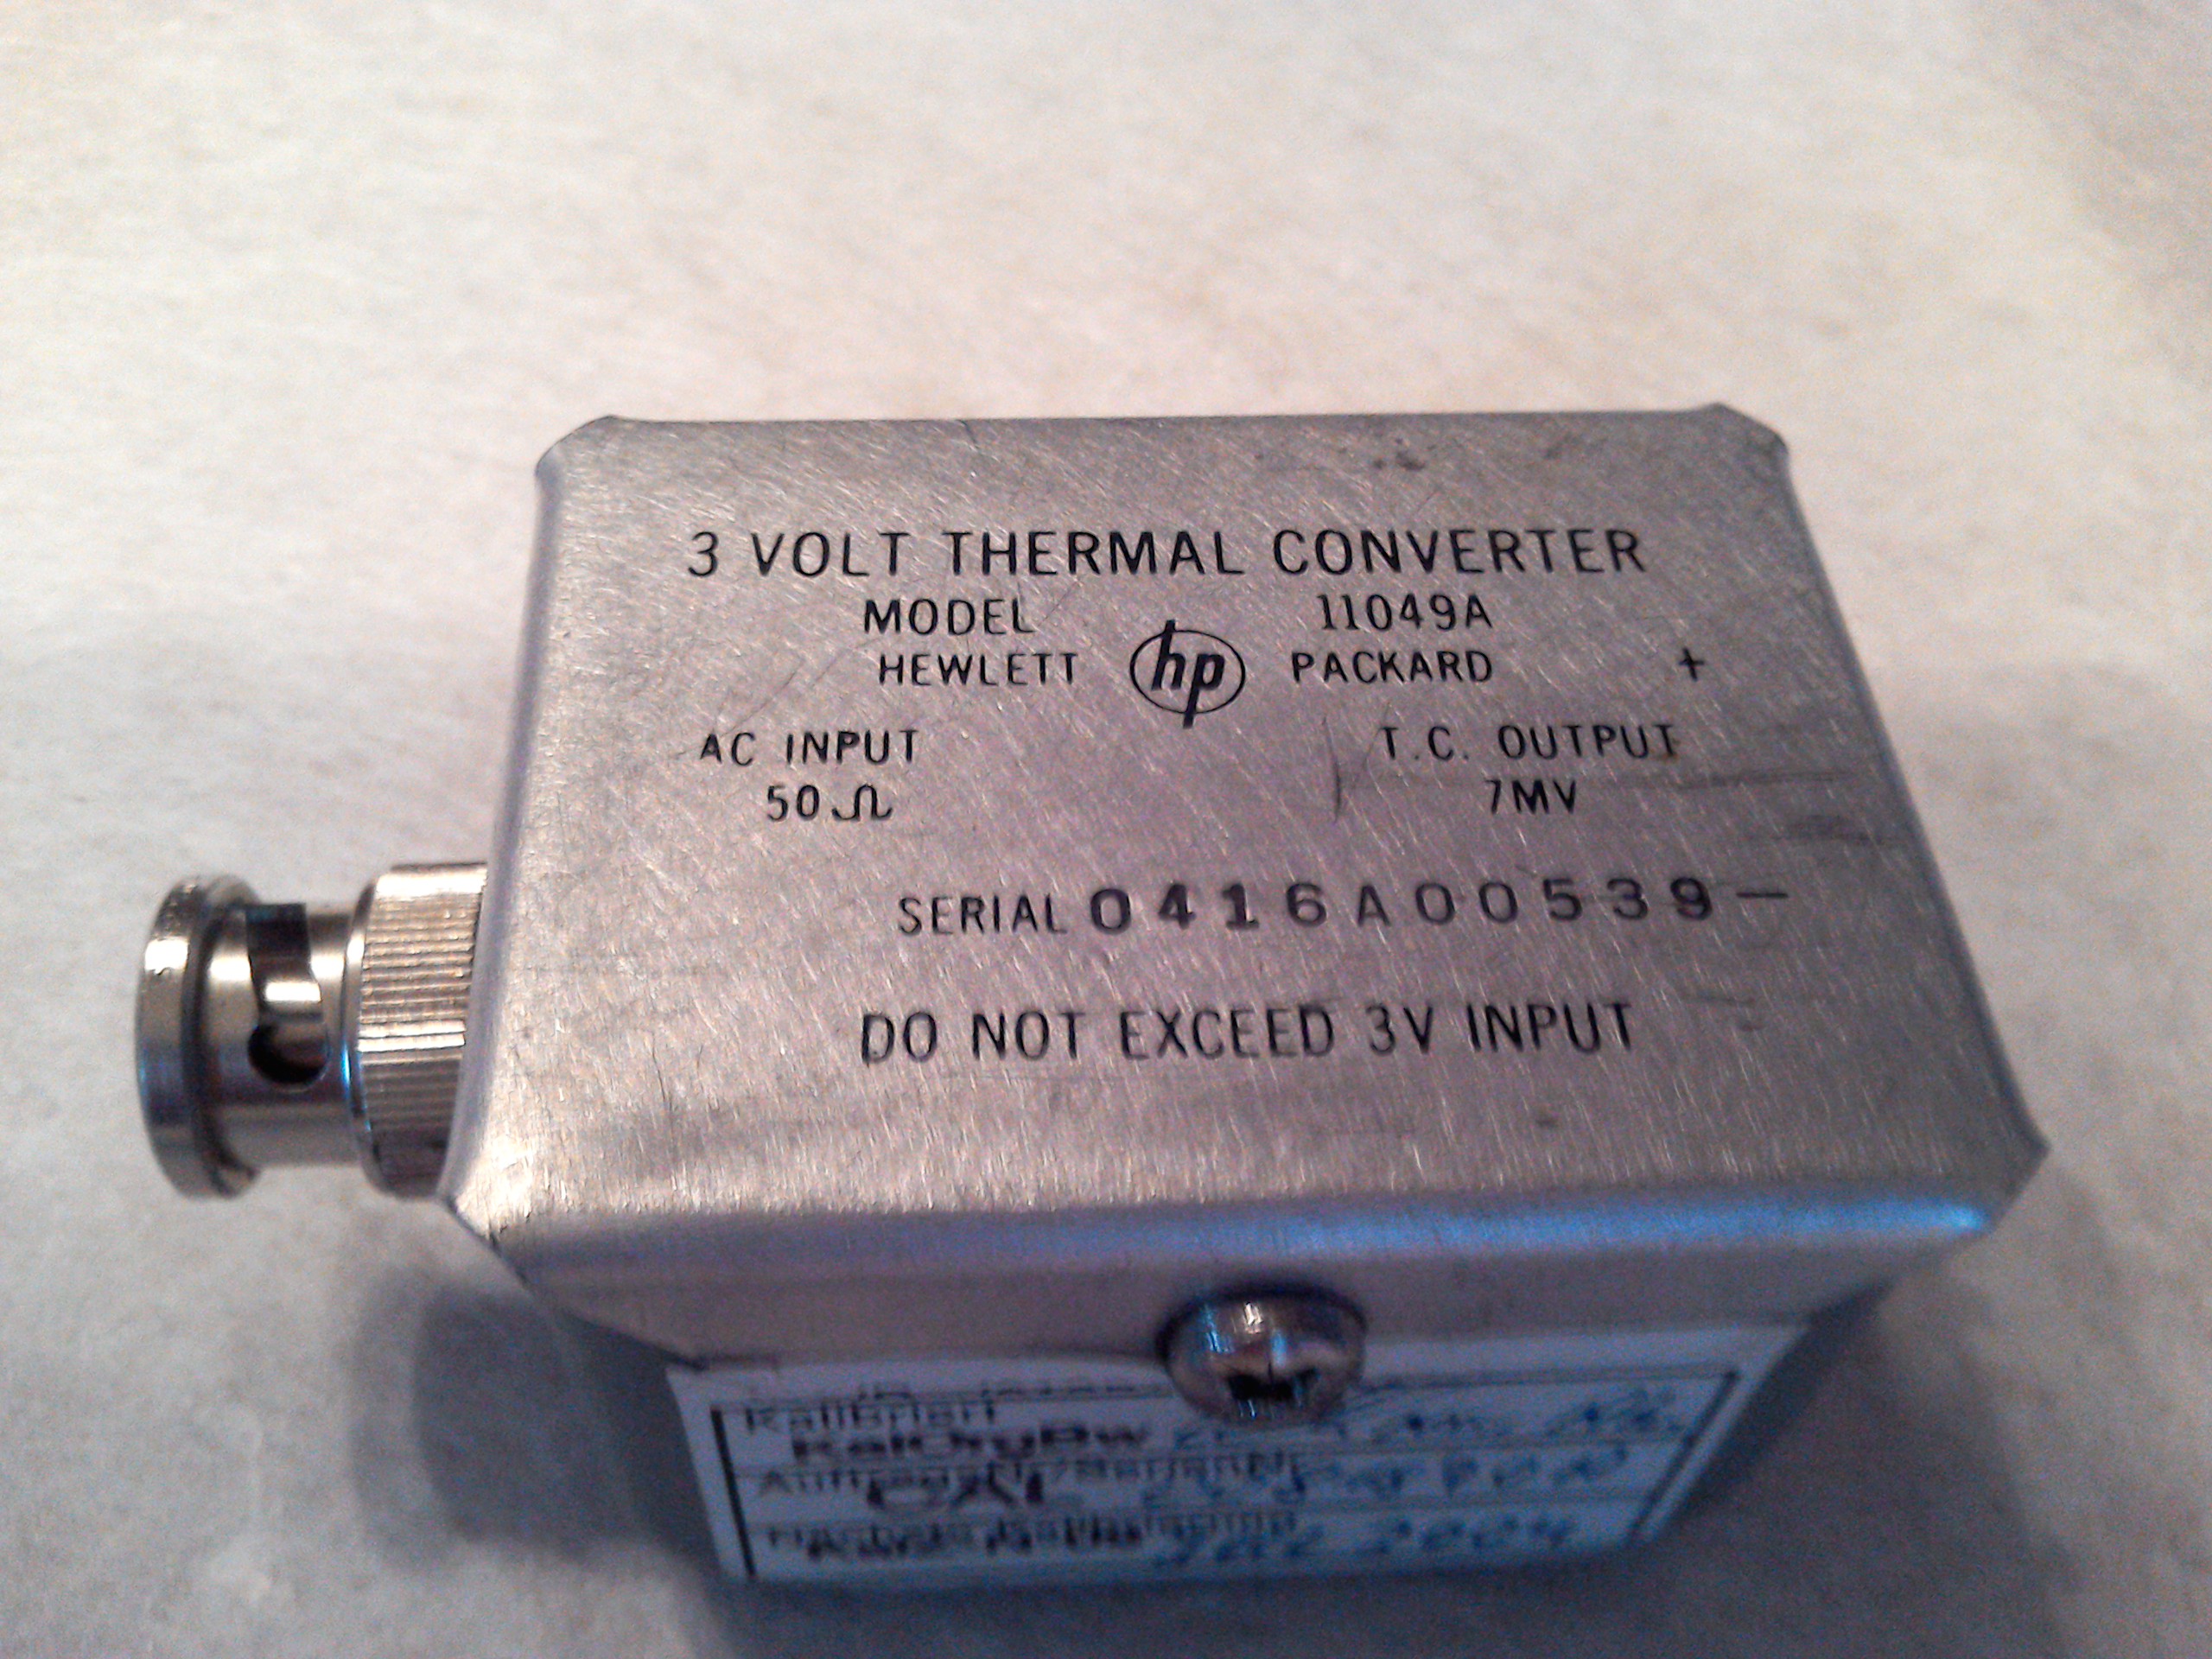 Hewlett Packard 11049A - 3Volt Thermal Converter